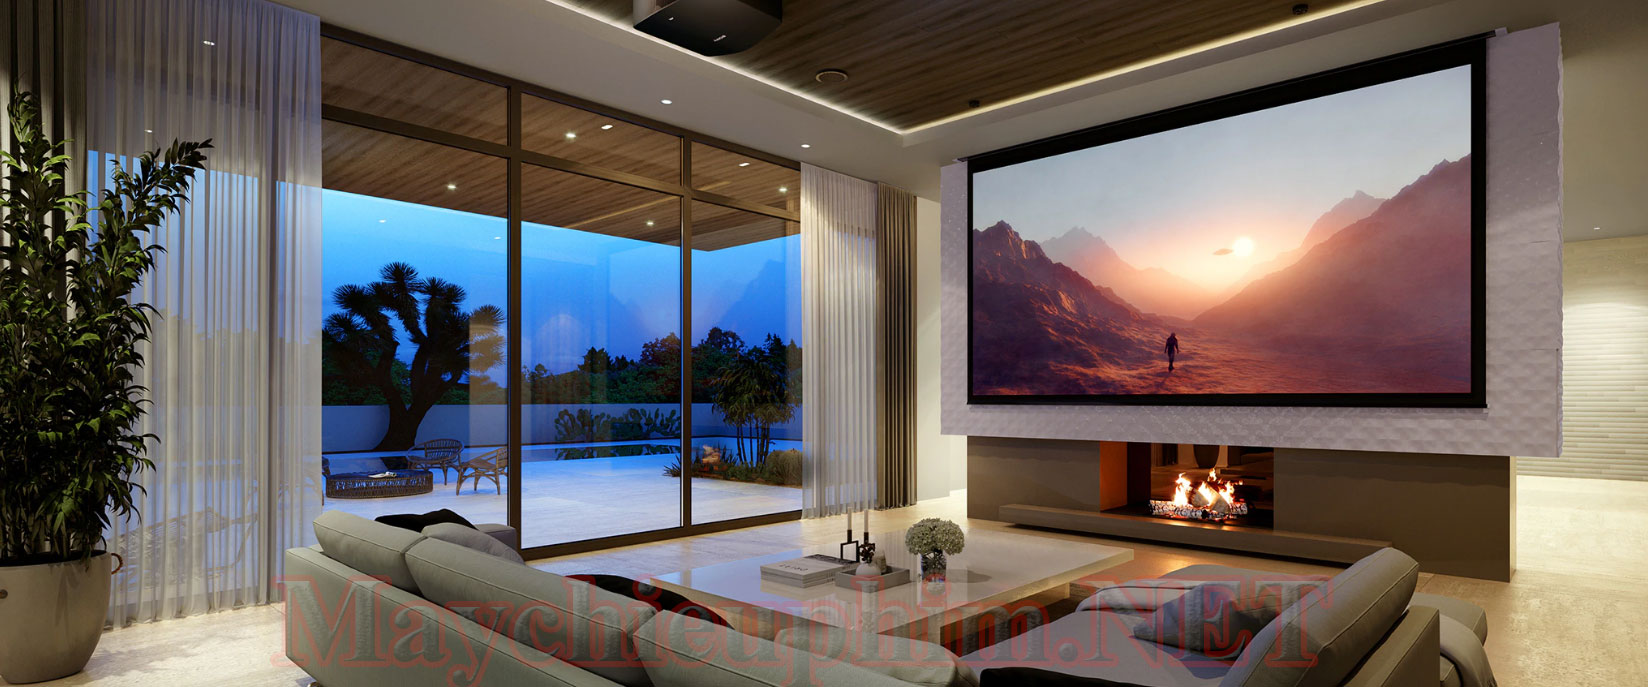 Máy chiếu 4K Sony VPL-VW790ES - Sự lựa chọn hoàn hảo cho phòng chiếu phim gia đình Home Cinema